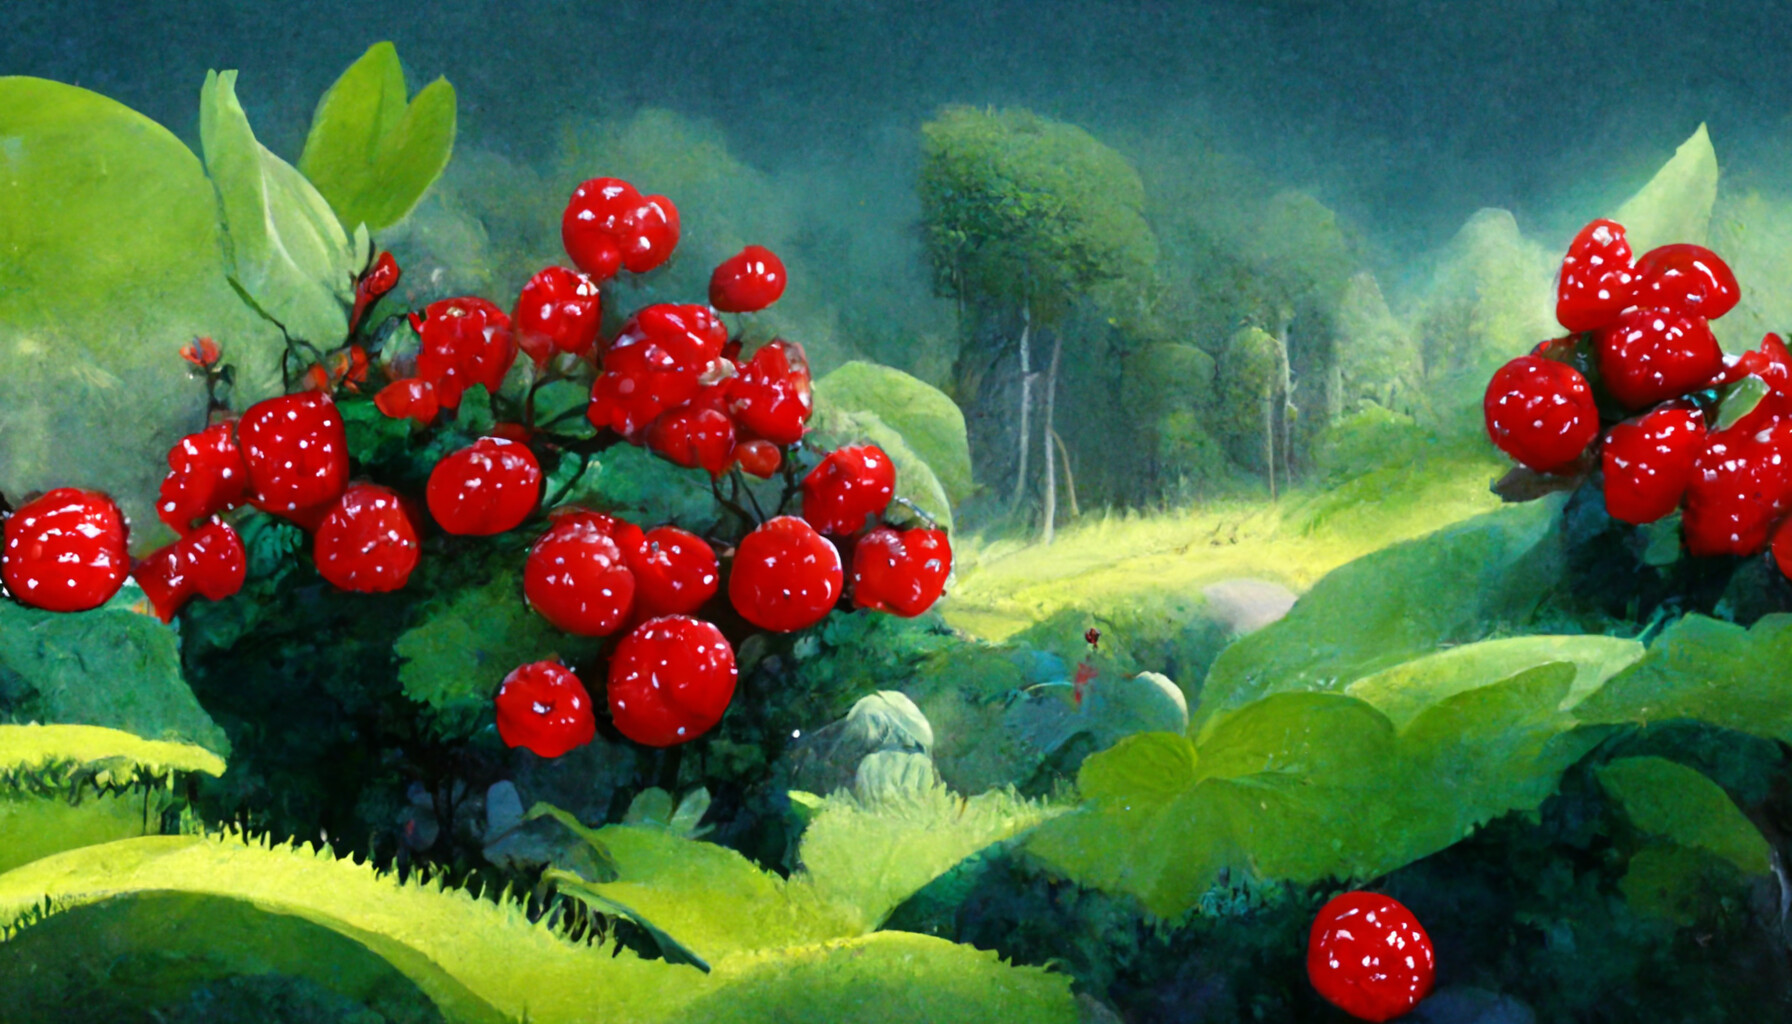 ArtStation - fantasy forest wallpaper. (High quality image) | Artworks